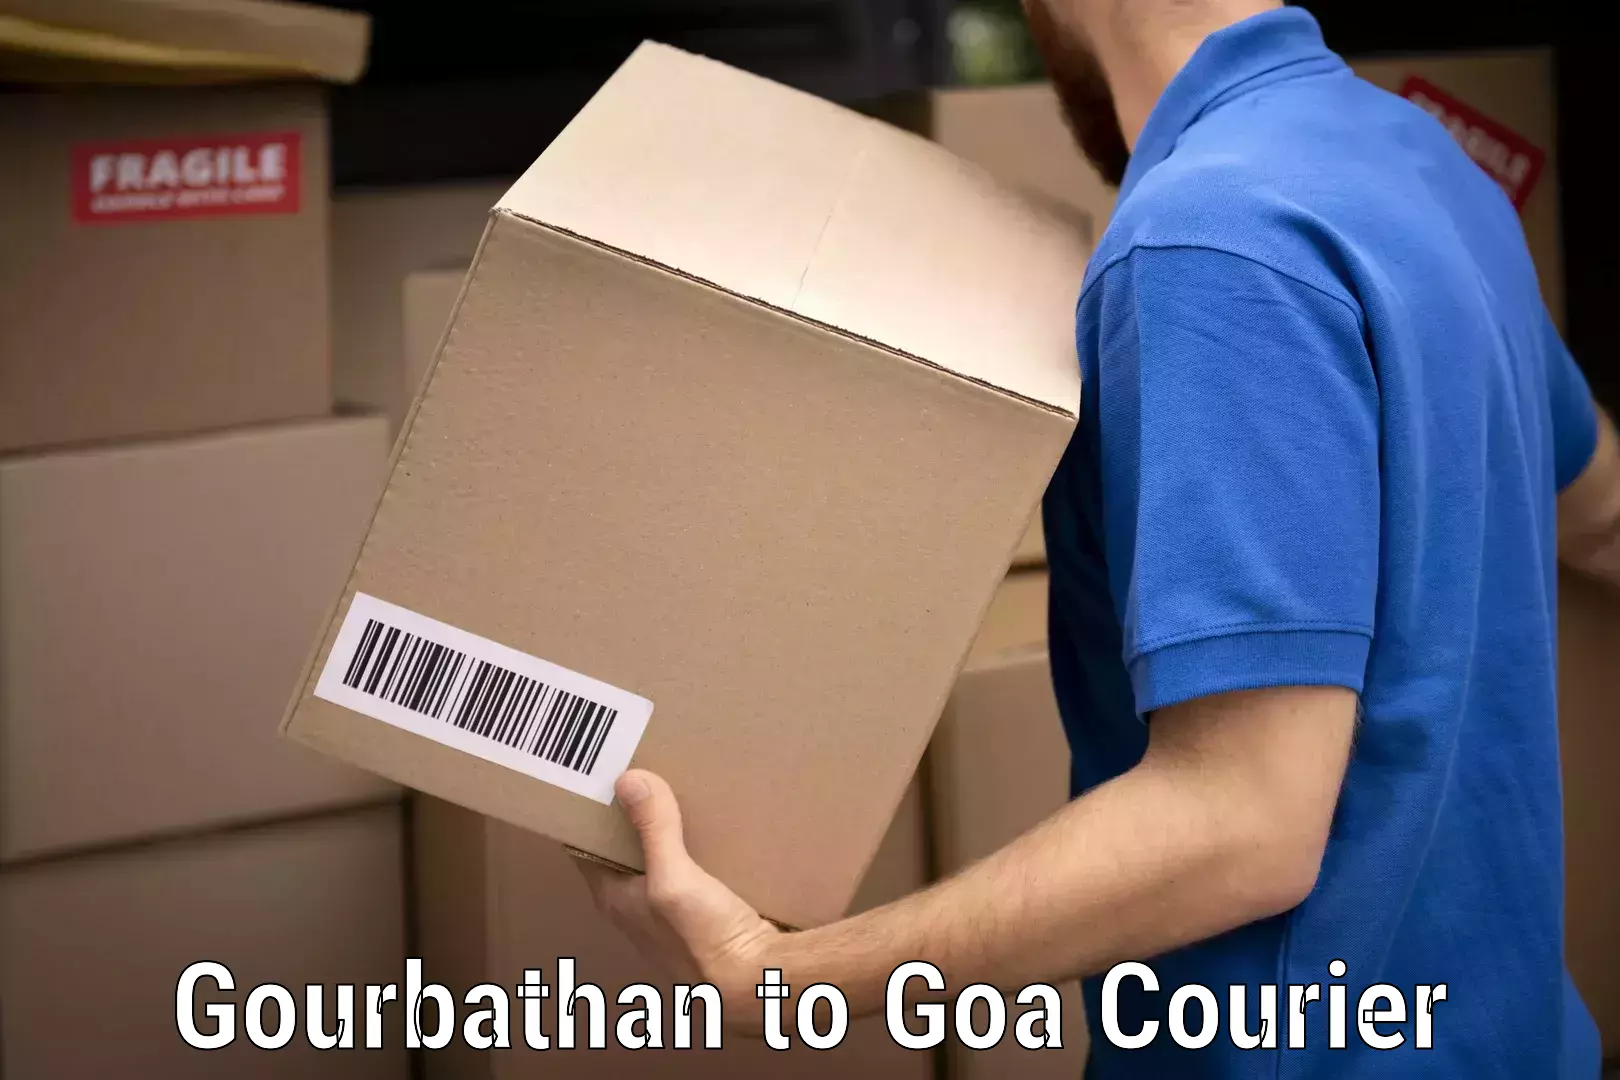 Professional furniture movers Gourbathan to Goa